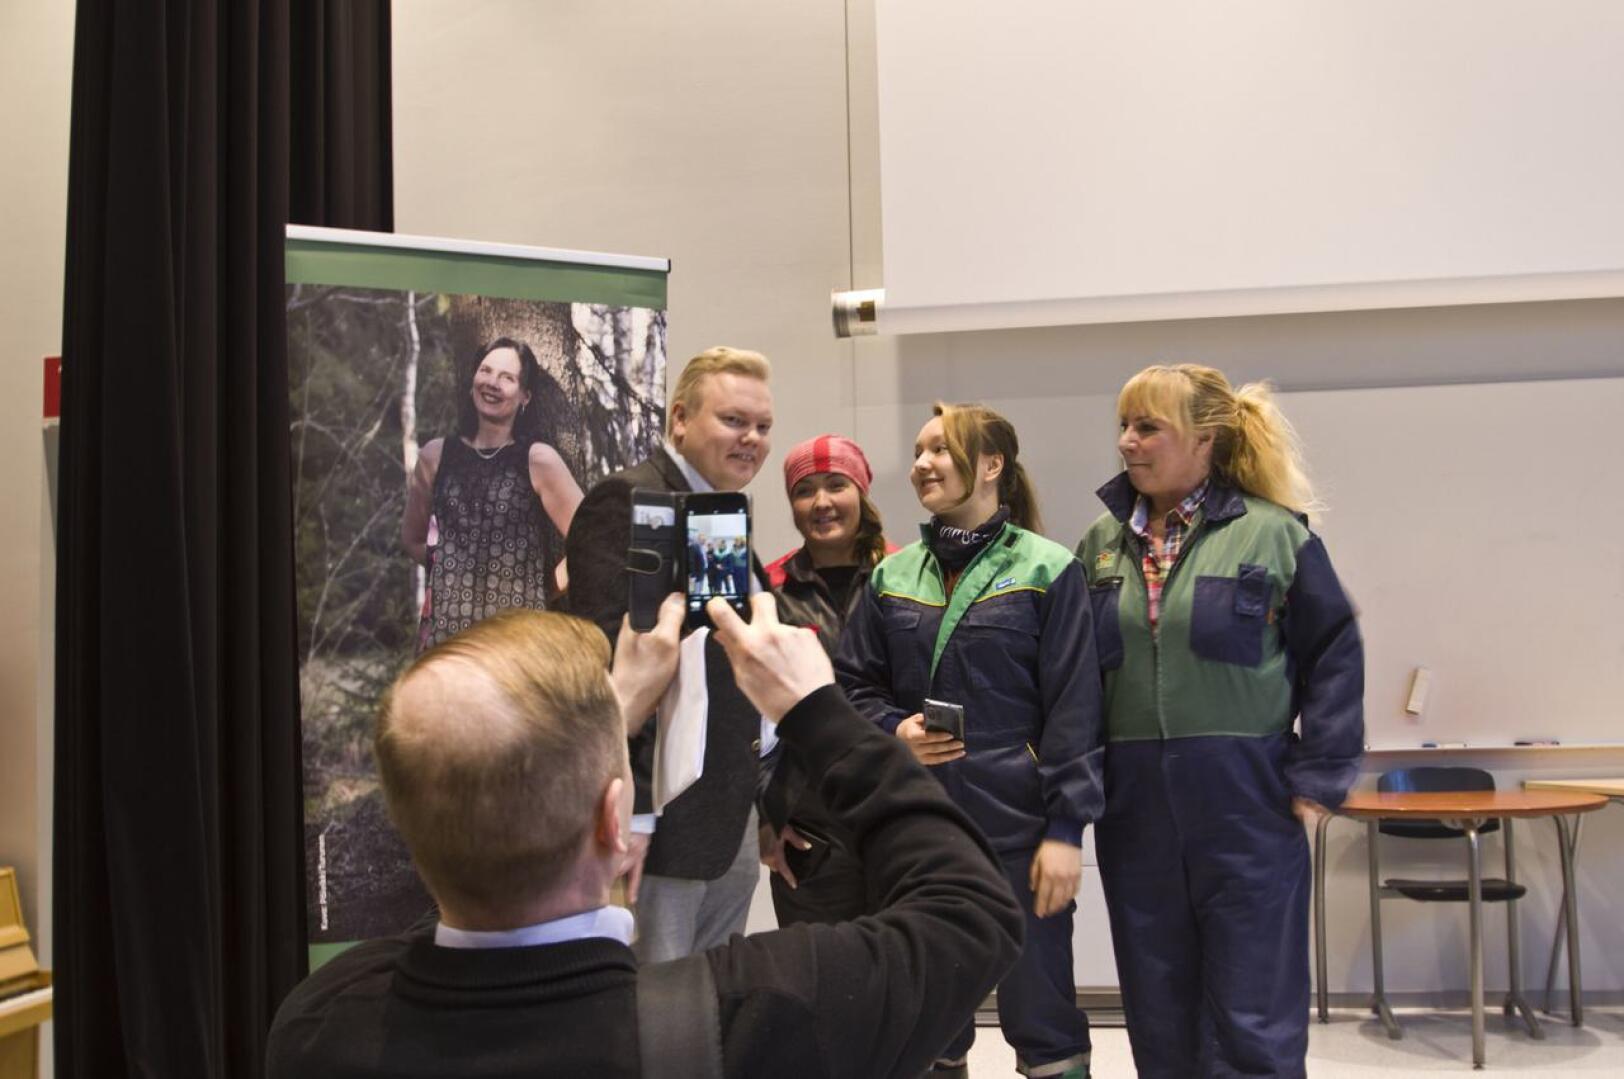 Ministeri Antti Kurvinen päätyi myös sosiaalisen median kuviin, Kurvista tenttasivat tuottajat Anu Ahlholm, Anne-Mari Tarkkio ja Eliisa Kumpula.